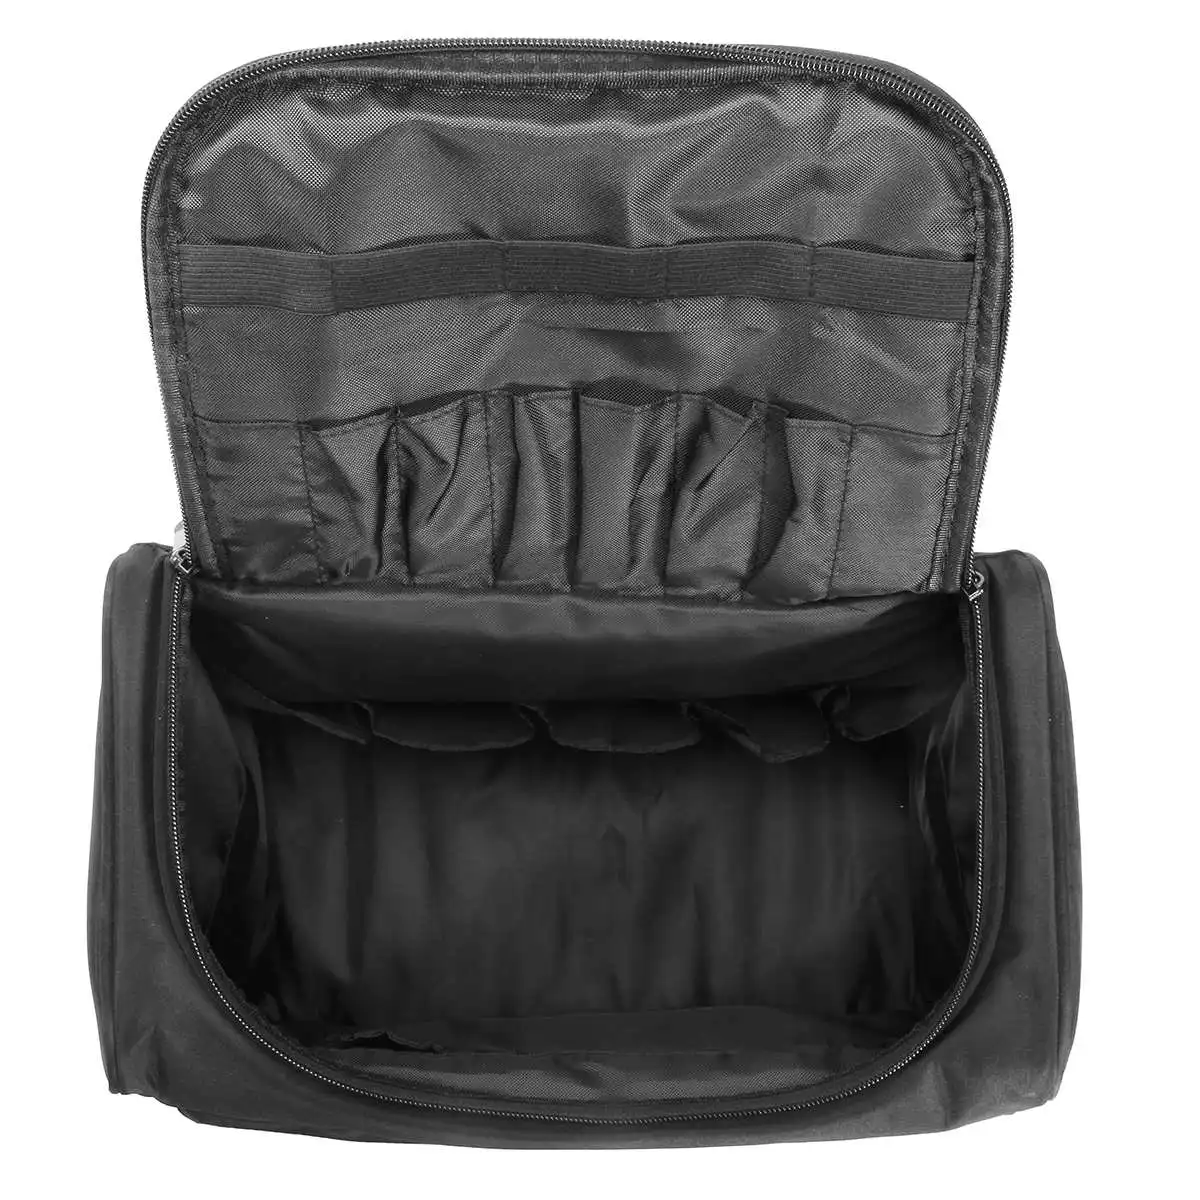 Profession elle Organizer-Tasche Hochwertige mehr schicht ige Schindel tasche Koffer mit großer Kapazität